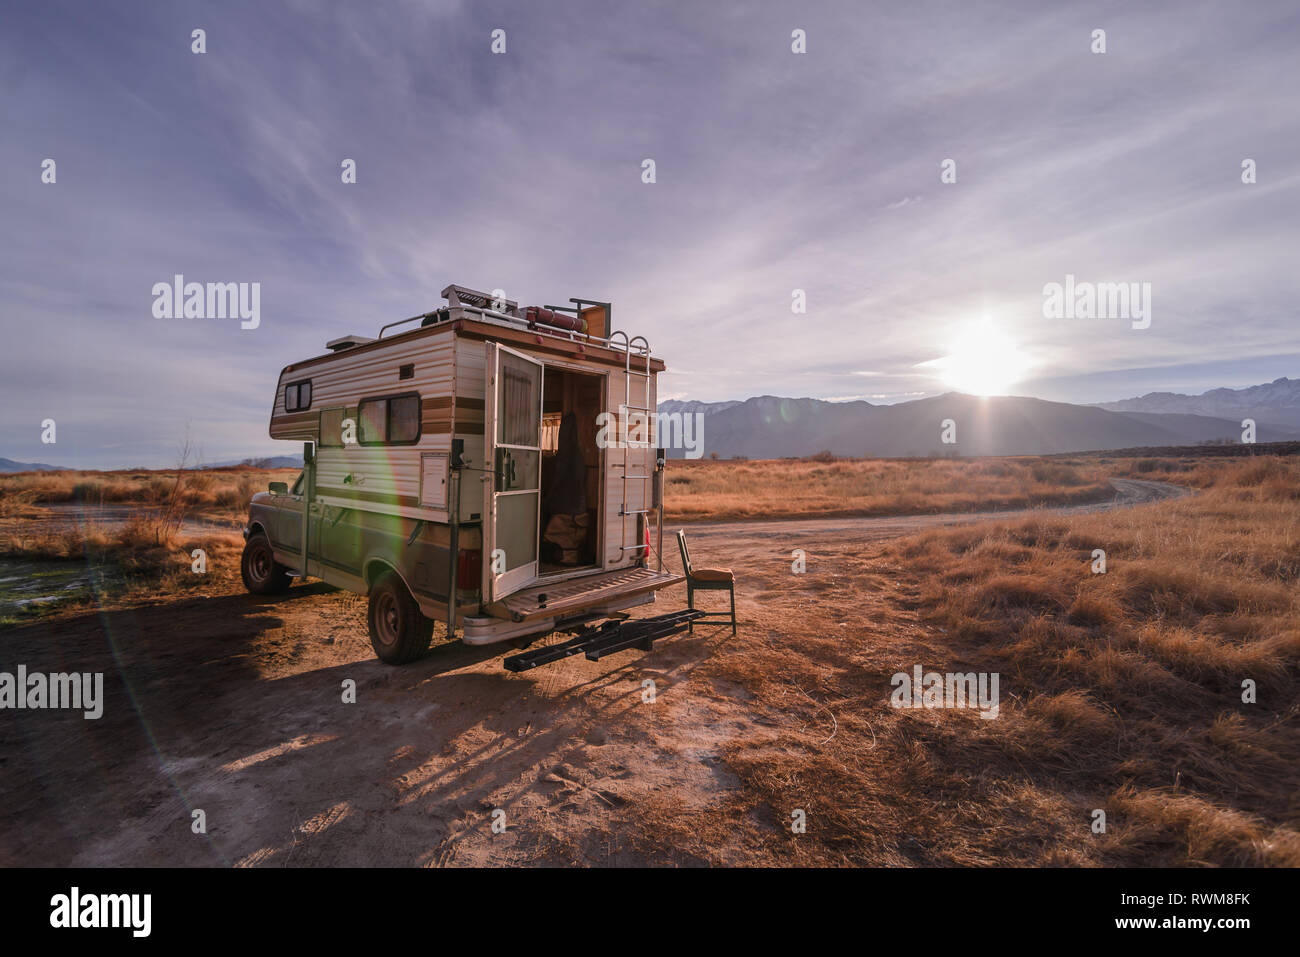 Campervan parked in desert, Sierra Nevada, Bishop, California, USA Stock Photo